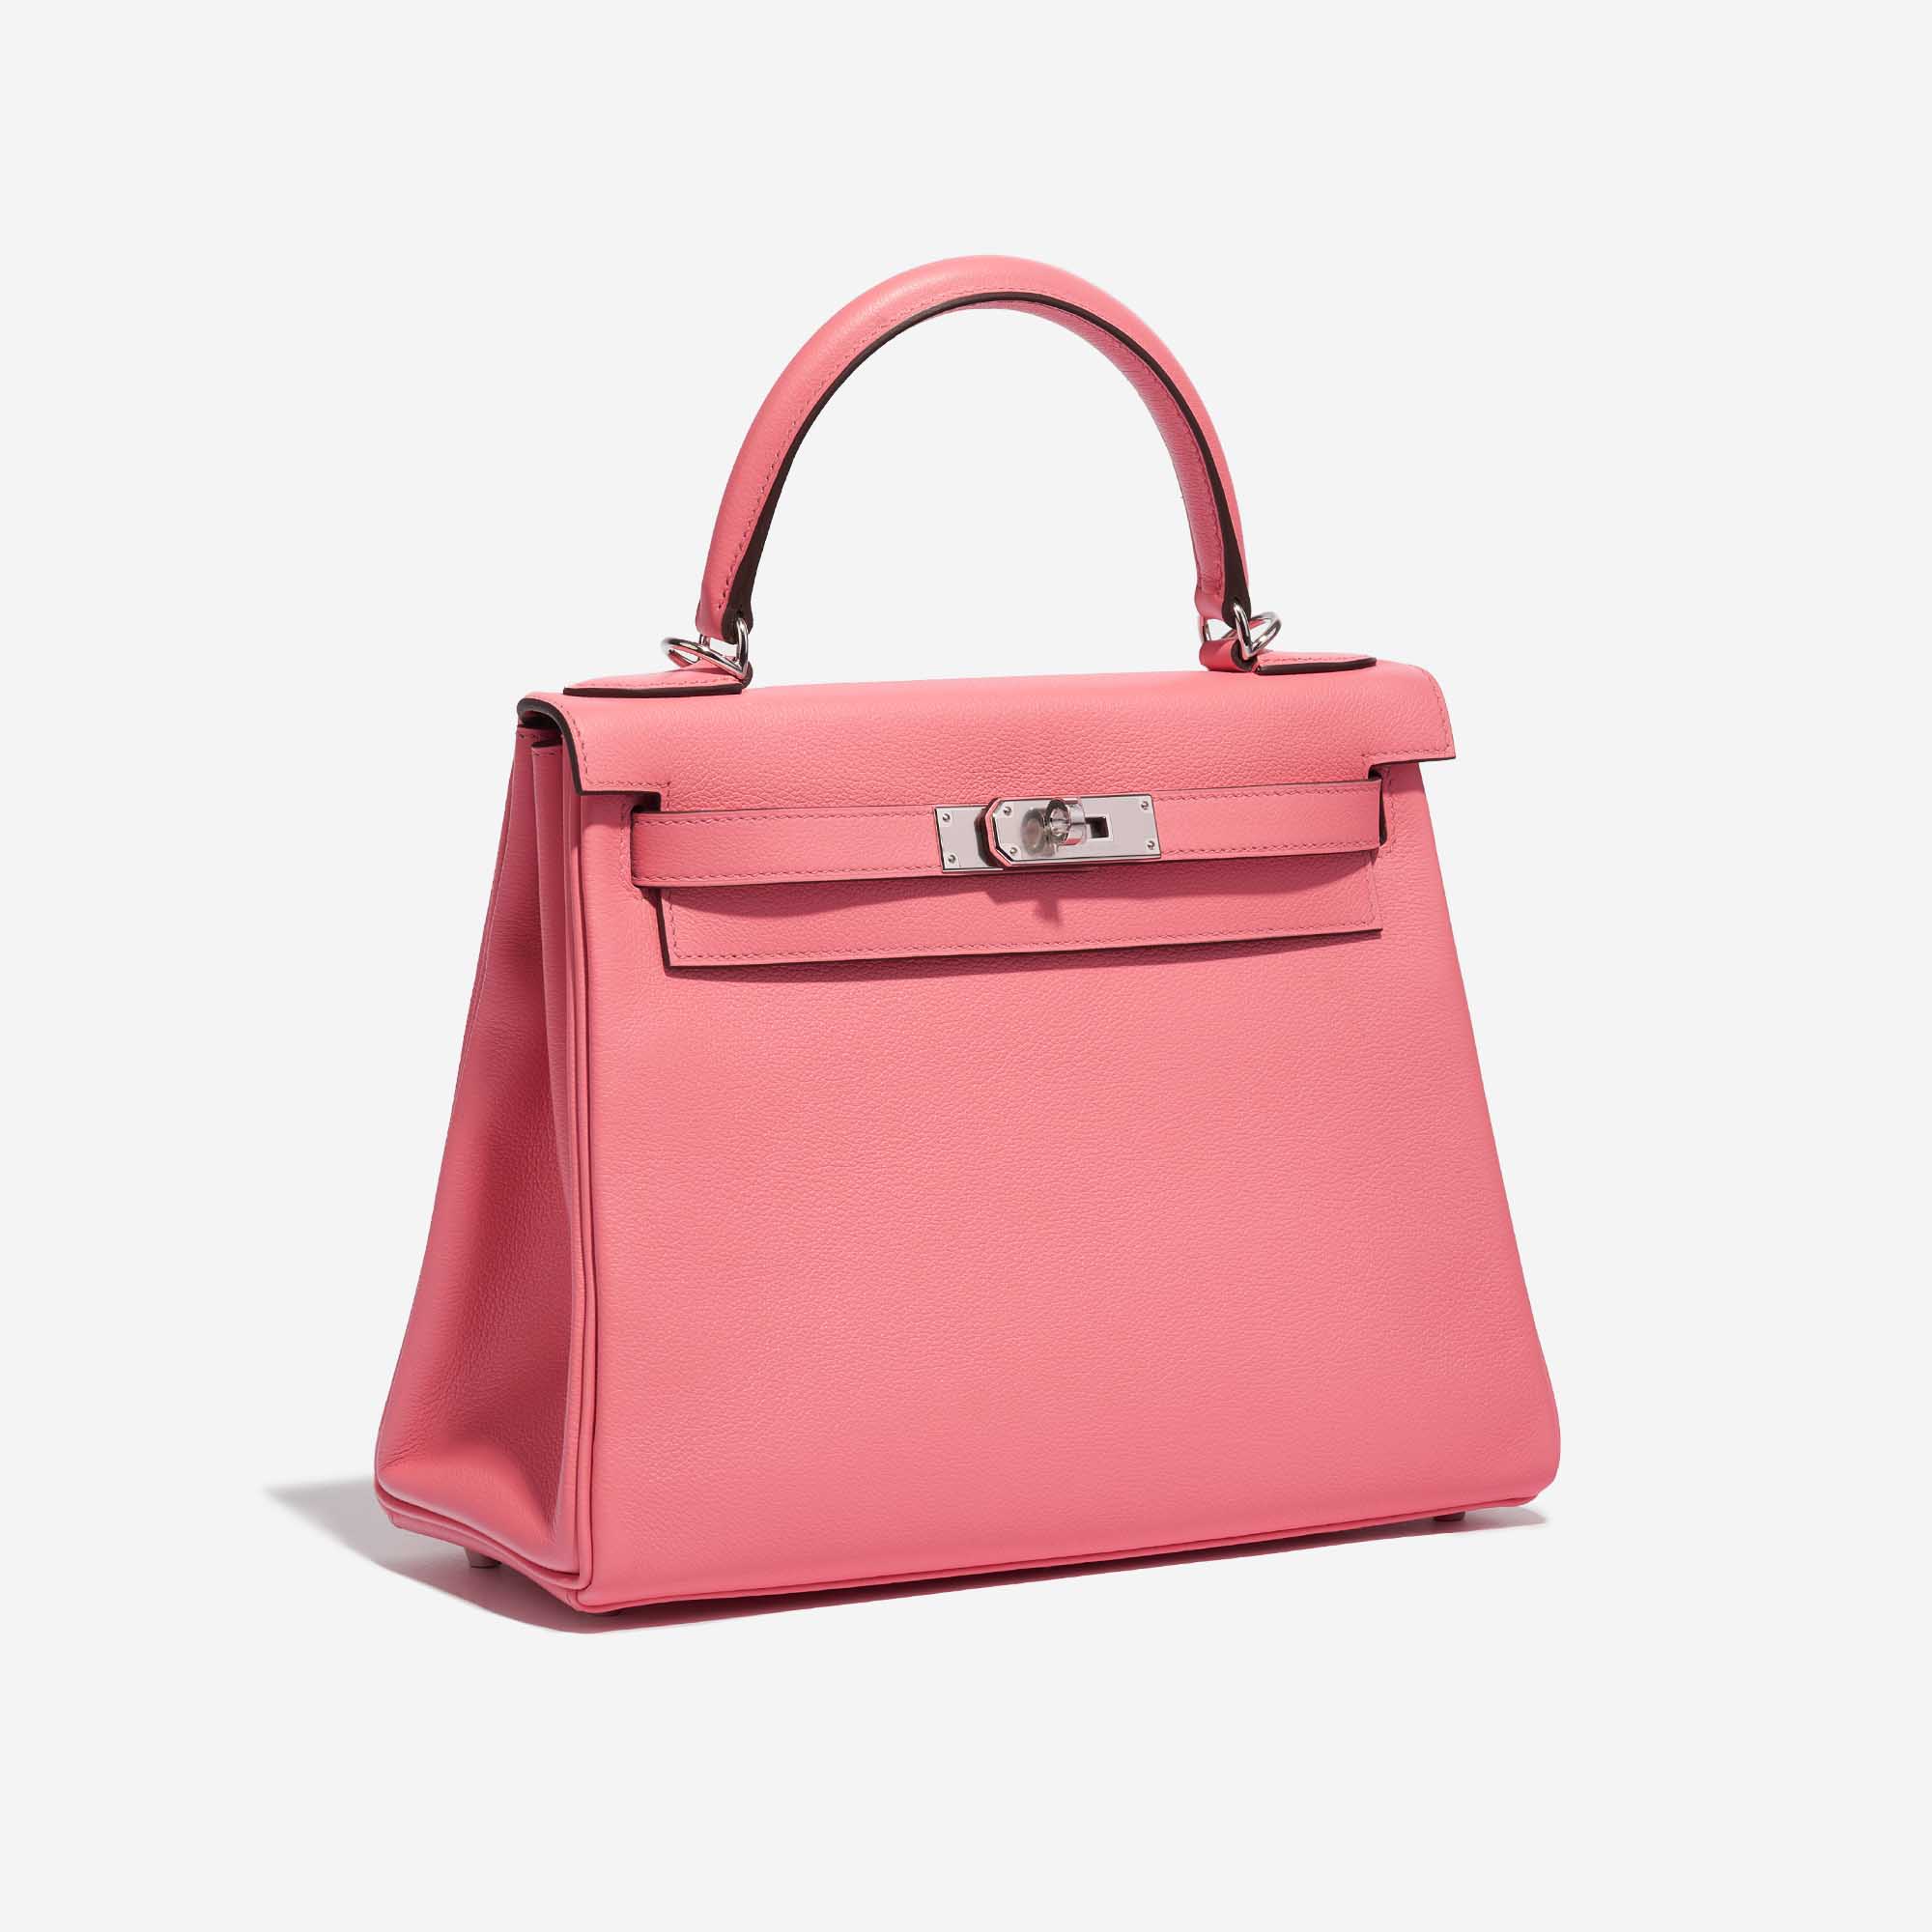 Sac Hermès Kelly 28 Verso Evercolor Rose D'Été / Terre Battue Pink, Rose Side Front | Vendez votre sac de créateur sur Saclab.com